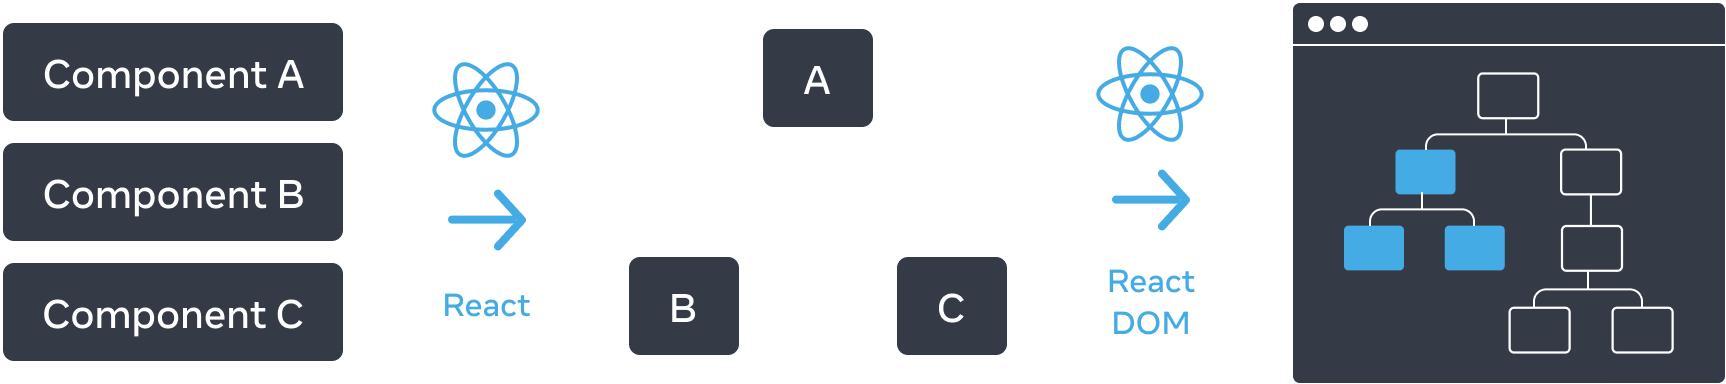 Un diagramme avec trois sections disposées horizontalement. Dans la première section, on trouve trois rectangles empilés verticalement, avec pour libellés « Composant A », « Composant B » et « Composant C ». Une flèche libellée « React », avec le logo React, fait la transition vers le panneau suivant. La section du milieu contient un arbre de composants, avec une racine libellée « A » et deux enfants libellés « B » et « C ». Une flèche libellée « React DOM », là encore avec le logo React, fait la transition vers le dernier panneau. Cette troisième section représente une maquette du navigateur contenant un arbre avec 8 nœuds, dont seul un sous-ensemble est mis en avant (qui représente l’arbre de la section du milieu).